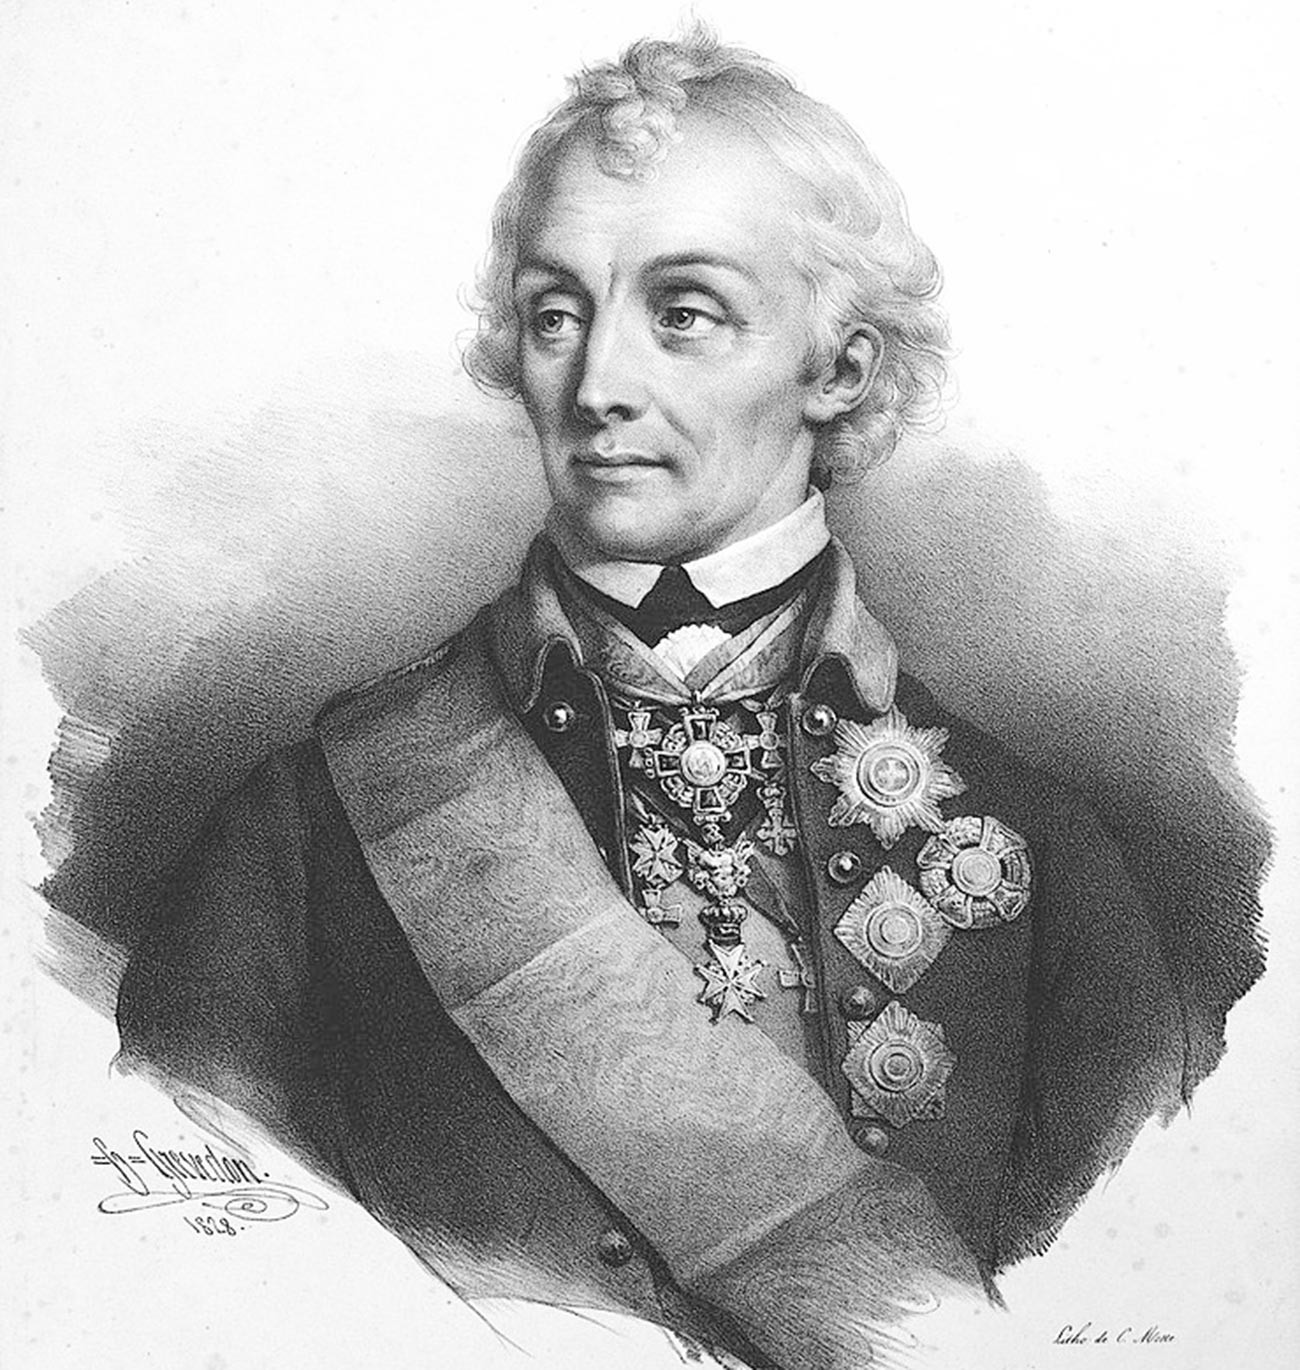 Полководец Суворов Александр Васильевич. Литография 1828 г.